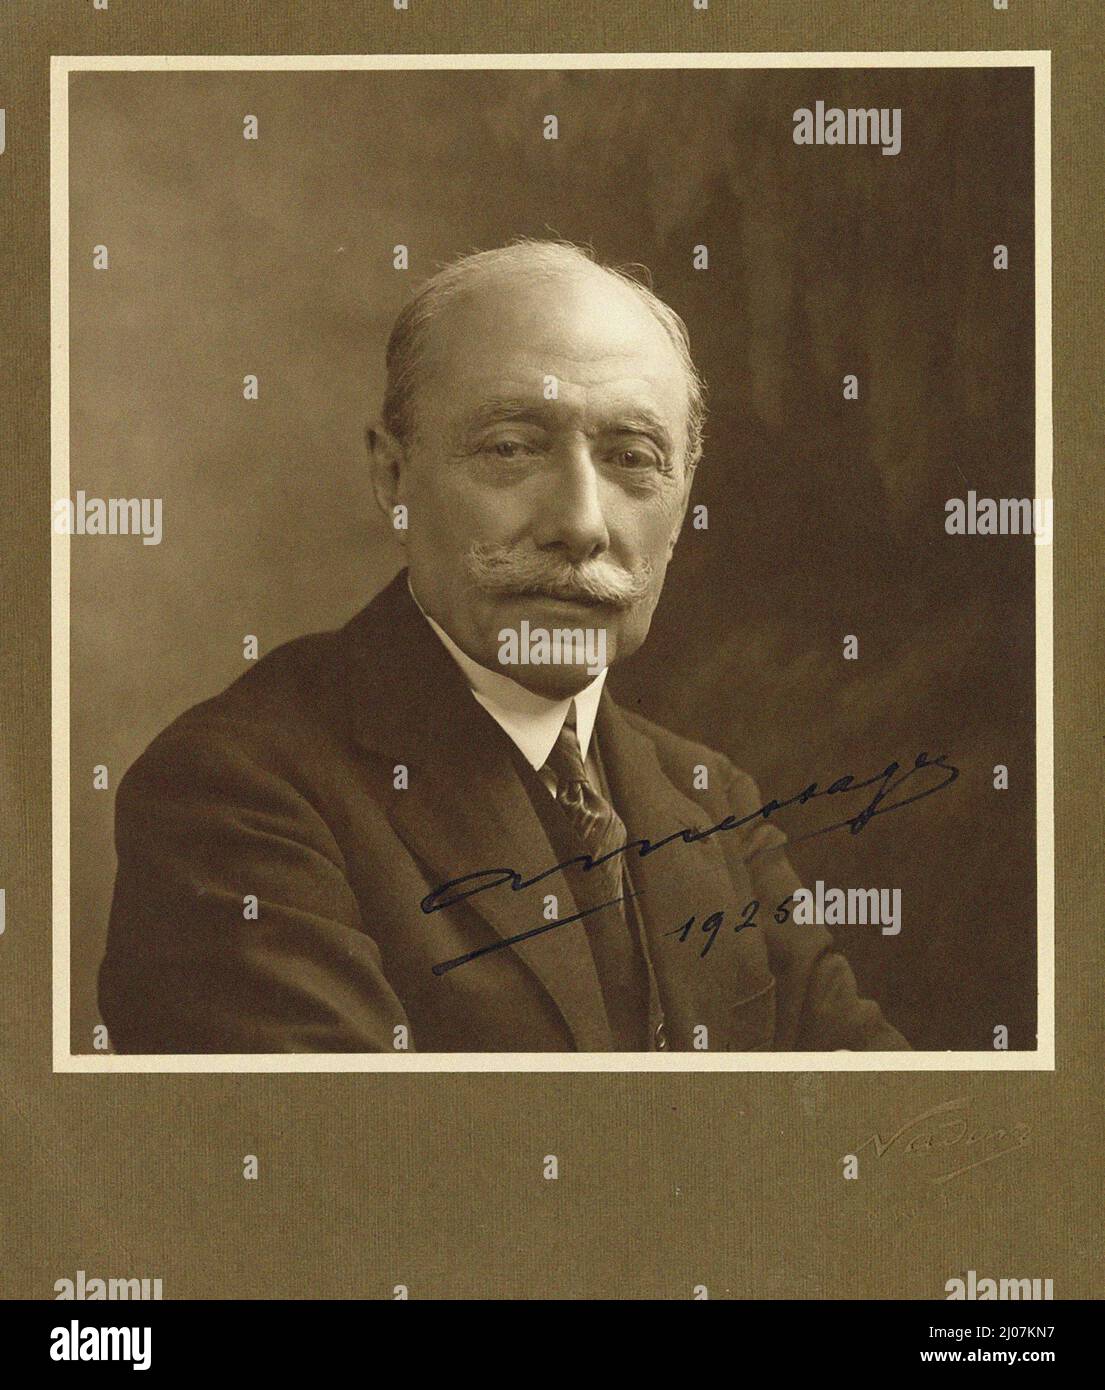 Porträt des Pianisten und Komponisten André Messager (1853-1929). Museum: private Sammlung. Autor: anonym. Stockfoto